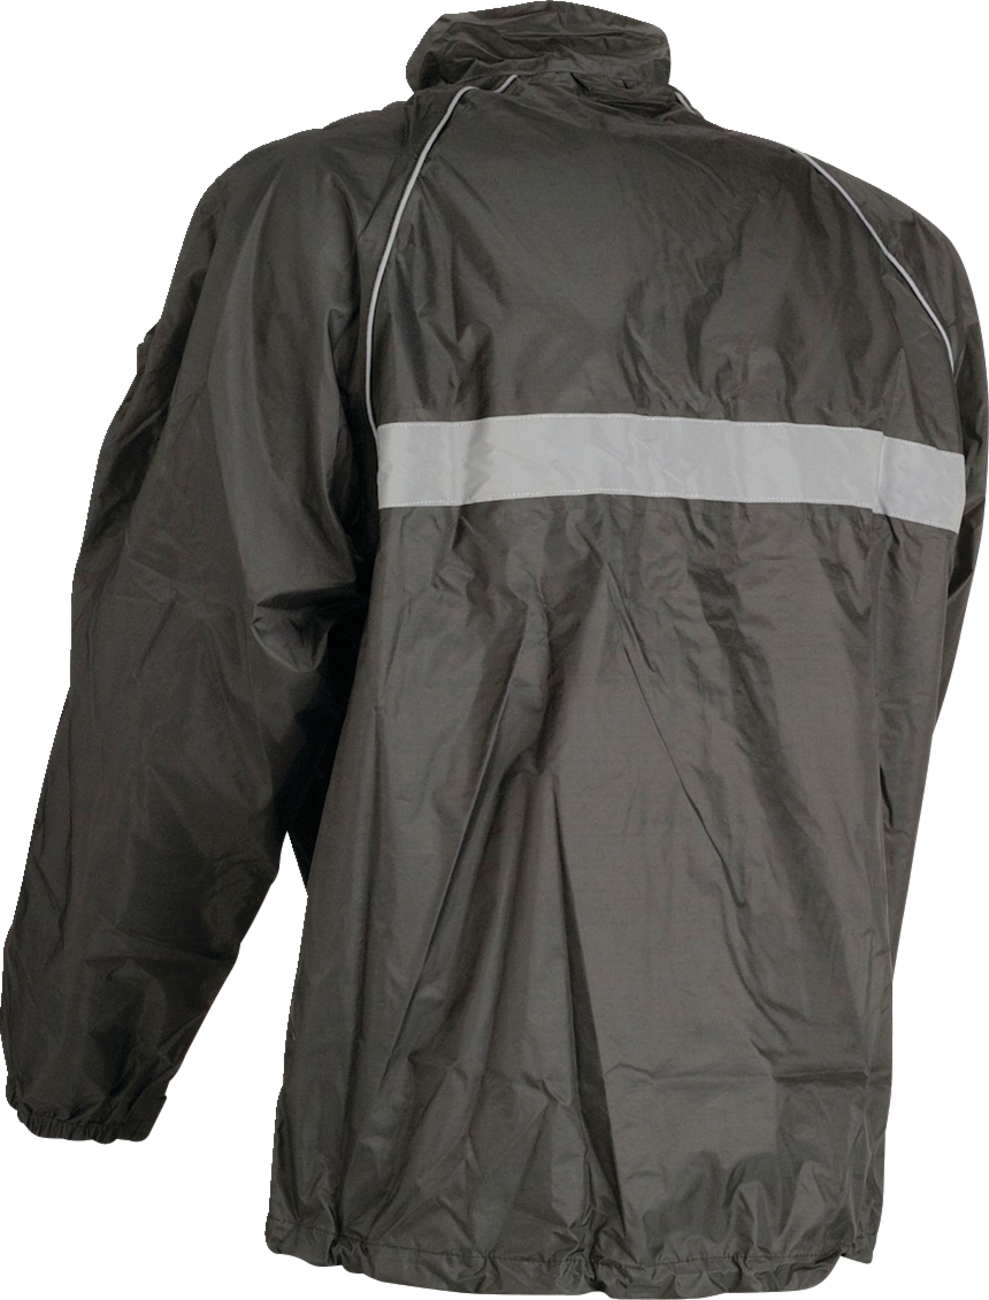 Z1R Waterproof Jacket - Black - XL 2854-0335